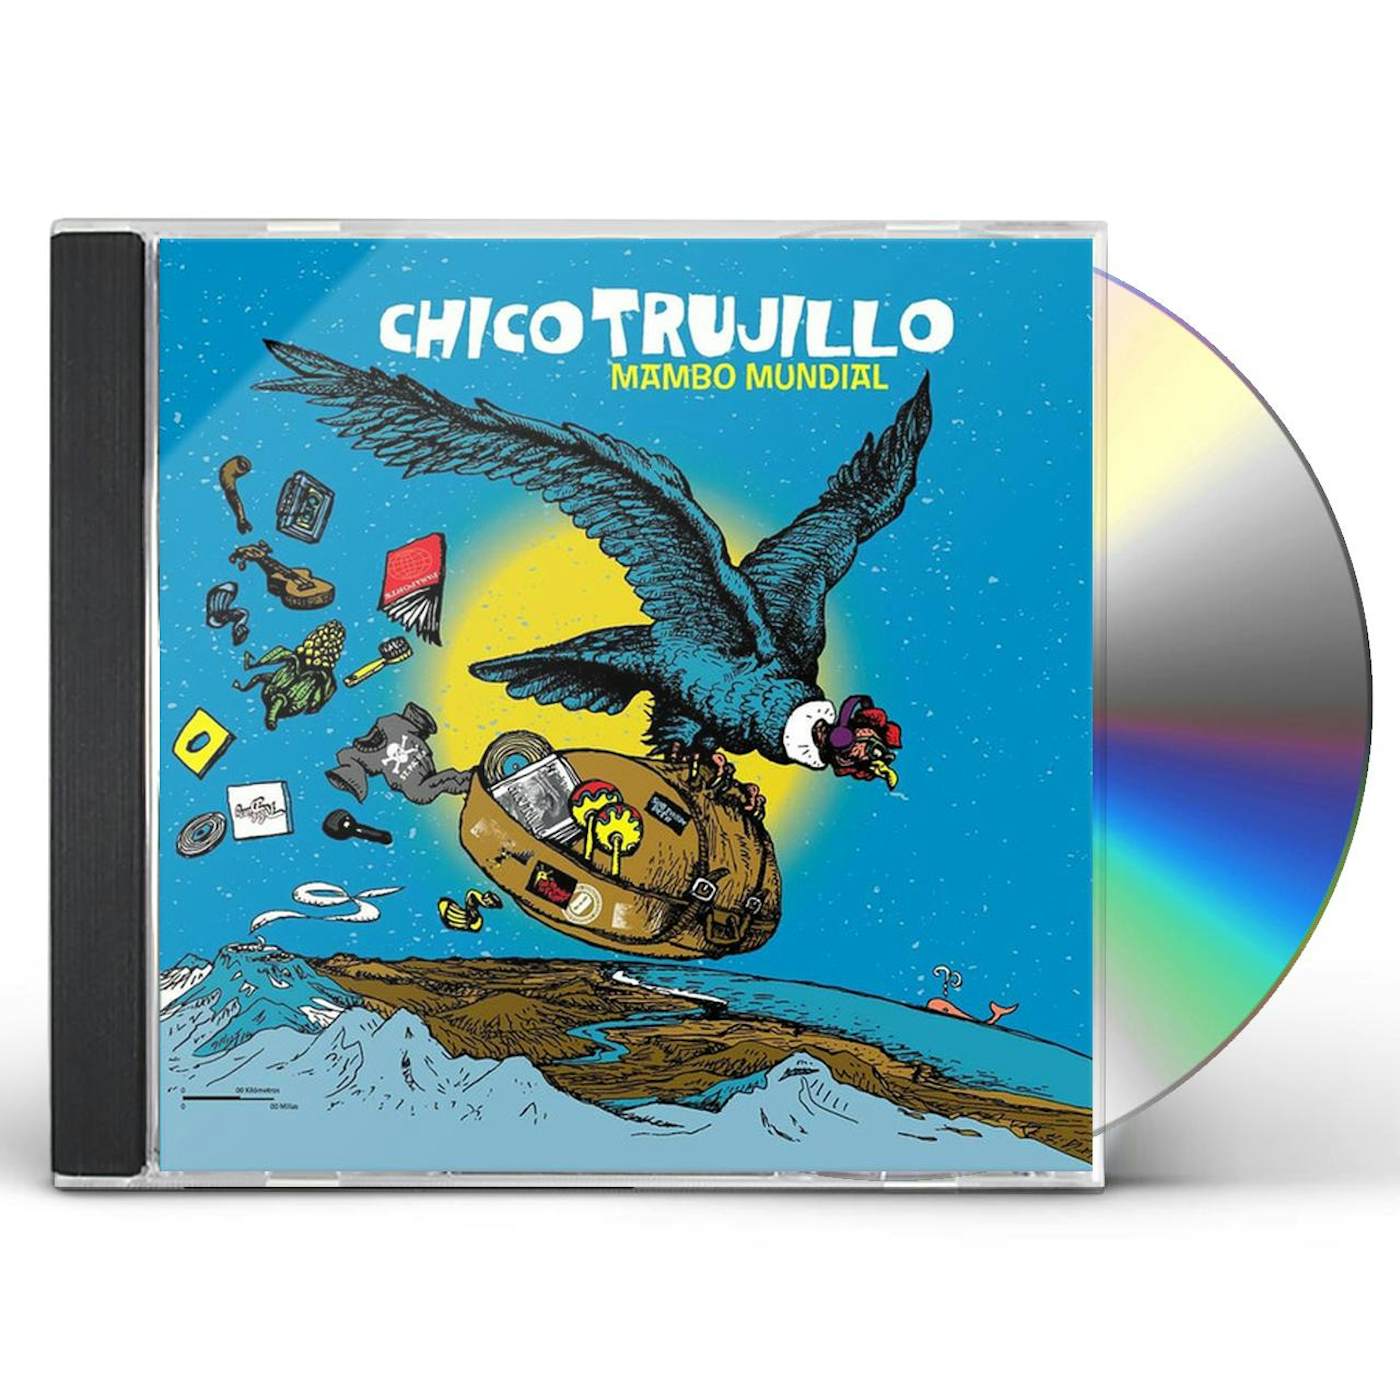 Chico Trujillo MAMBO MUNDIAL CD